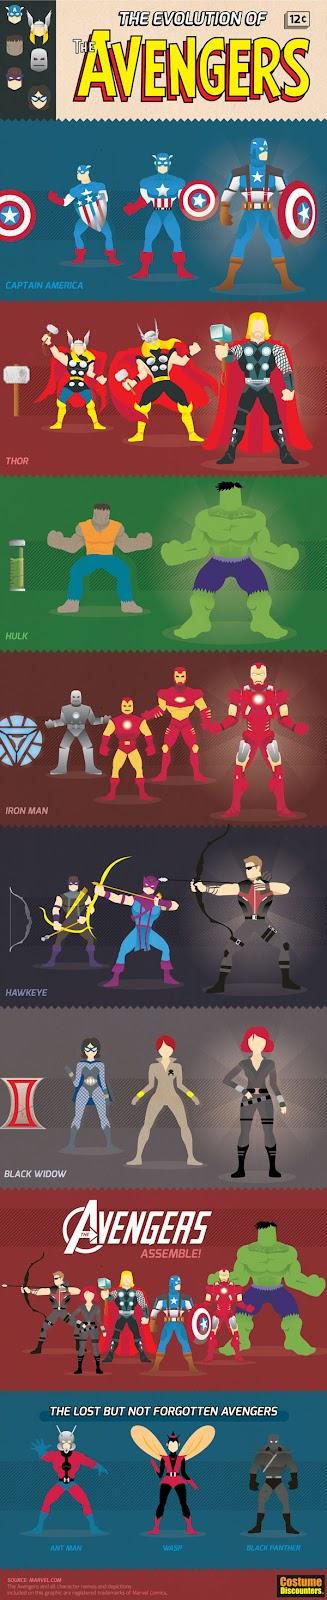 La evolución de “The Avengers” [Infografía]